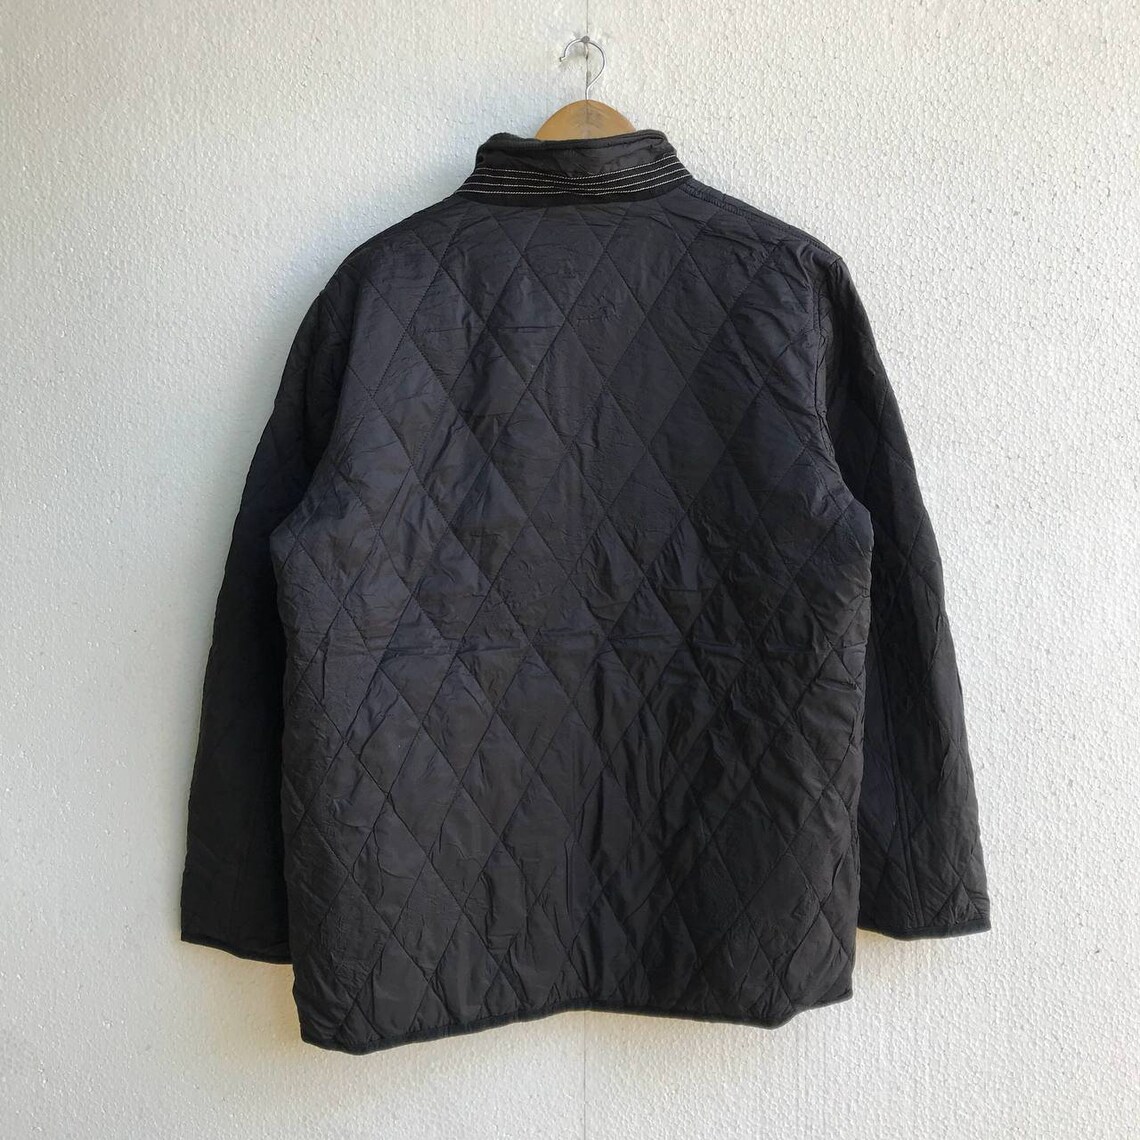 Rare Kansai Yamamoto Homme Jacket Size L | Etsy